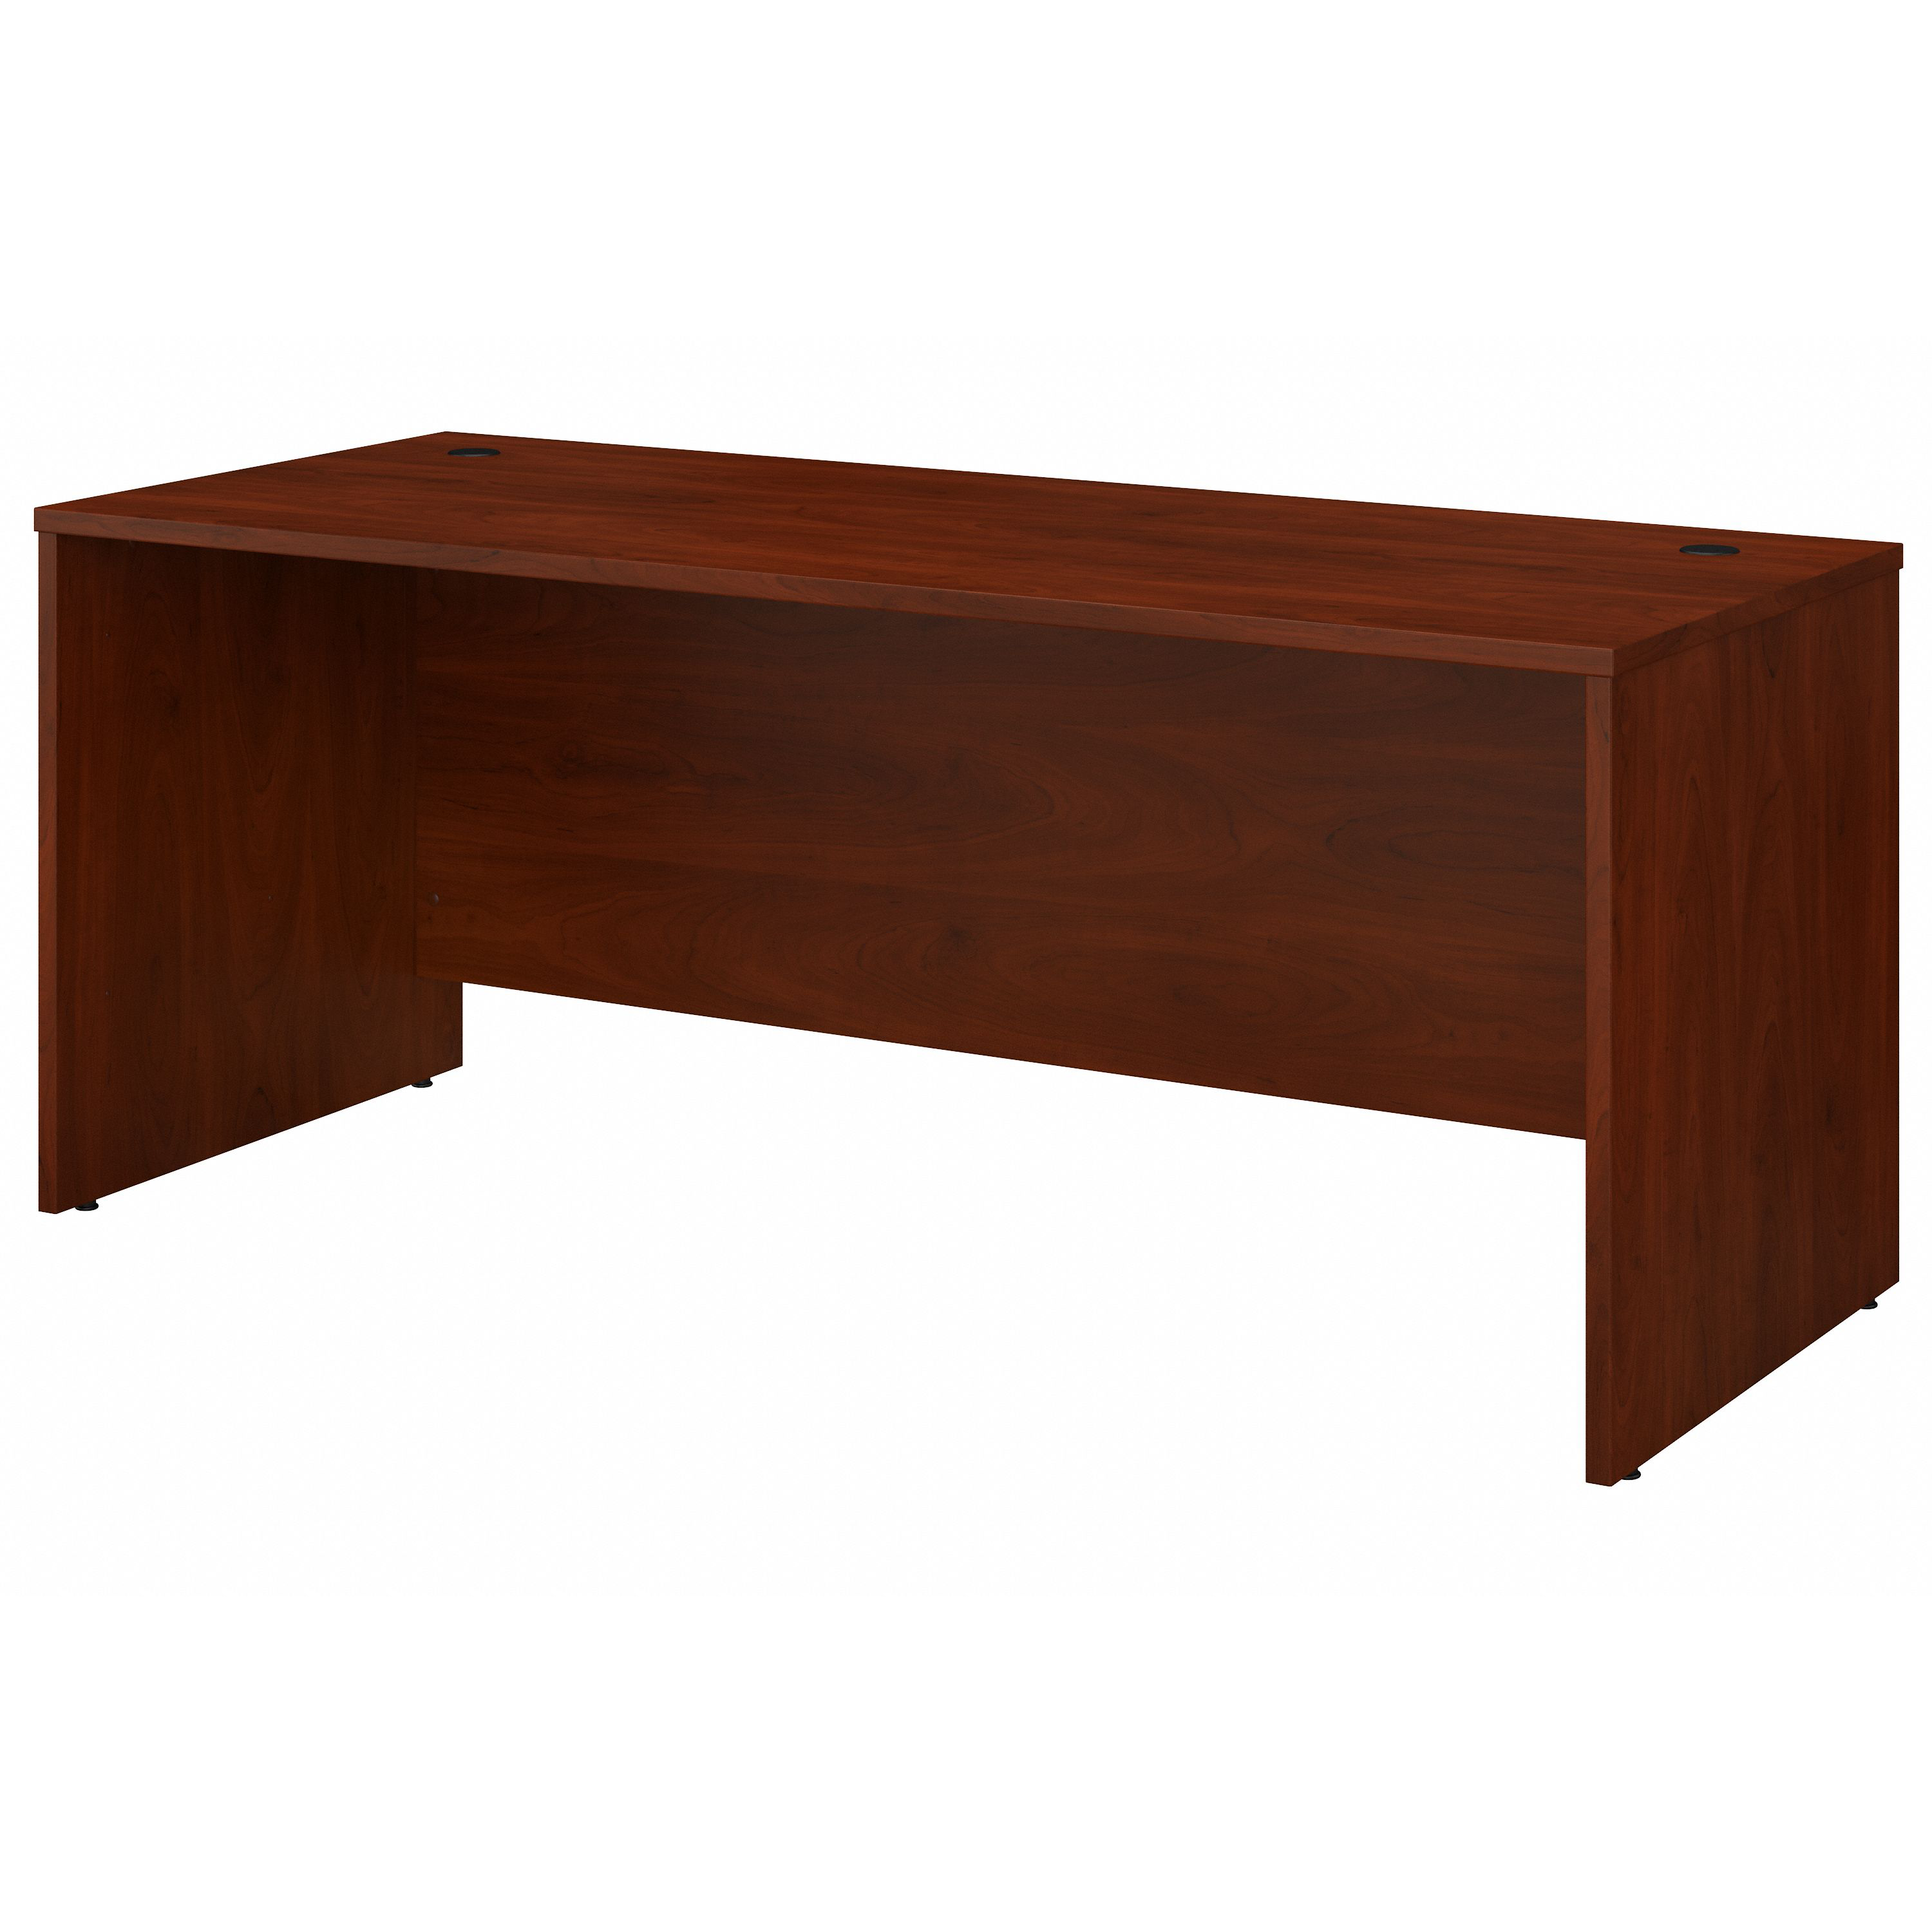 Shop Bush Business Furniture Studio C 72W x 30D Office Desk 02 SCD272HC #color_hansen cherry